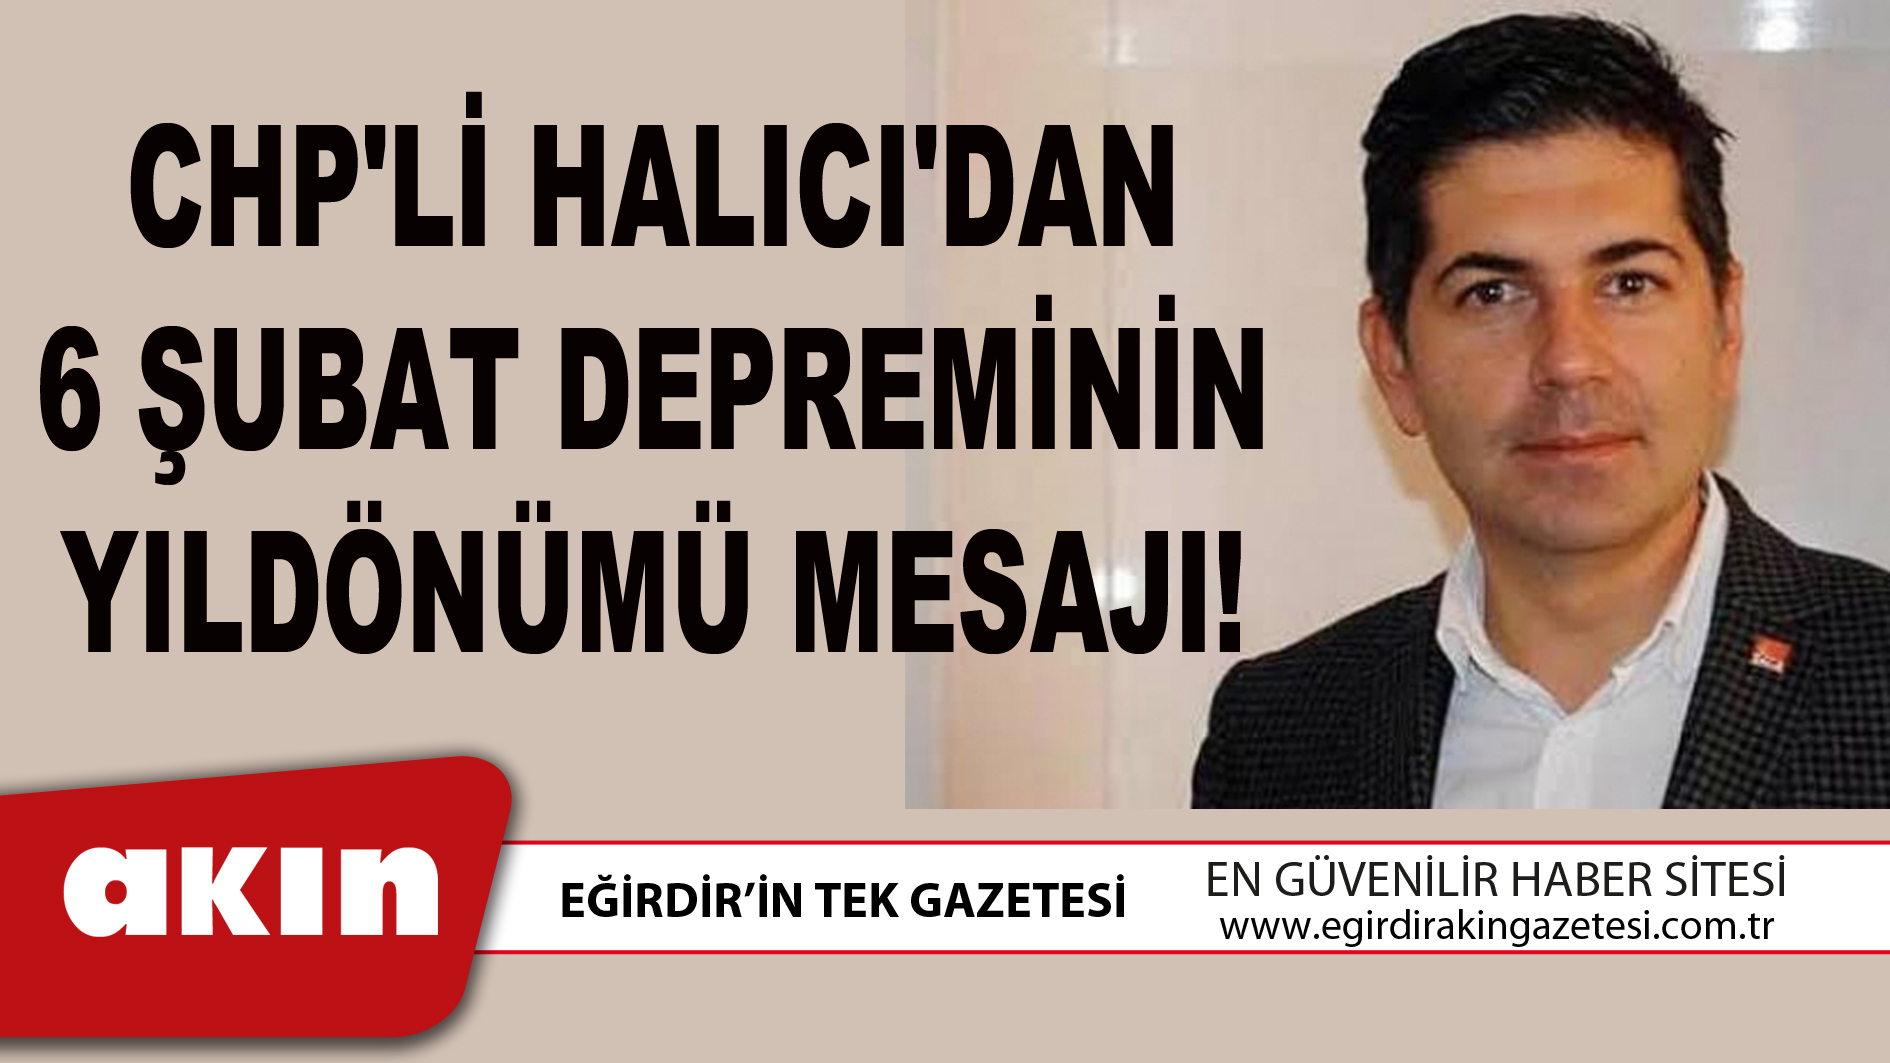 CHP'Lİ HALICI'DAN 6 ŞUBAT DEPREMİNİN YILDÖNÜMÜ MESAJI!